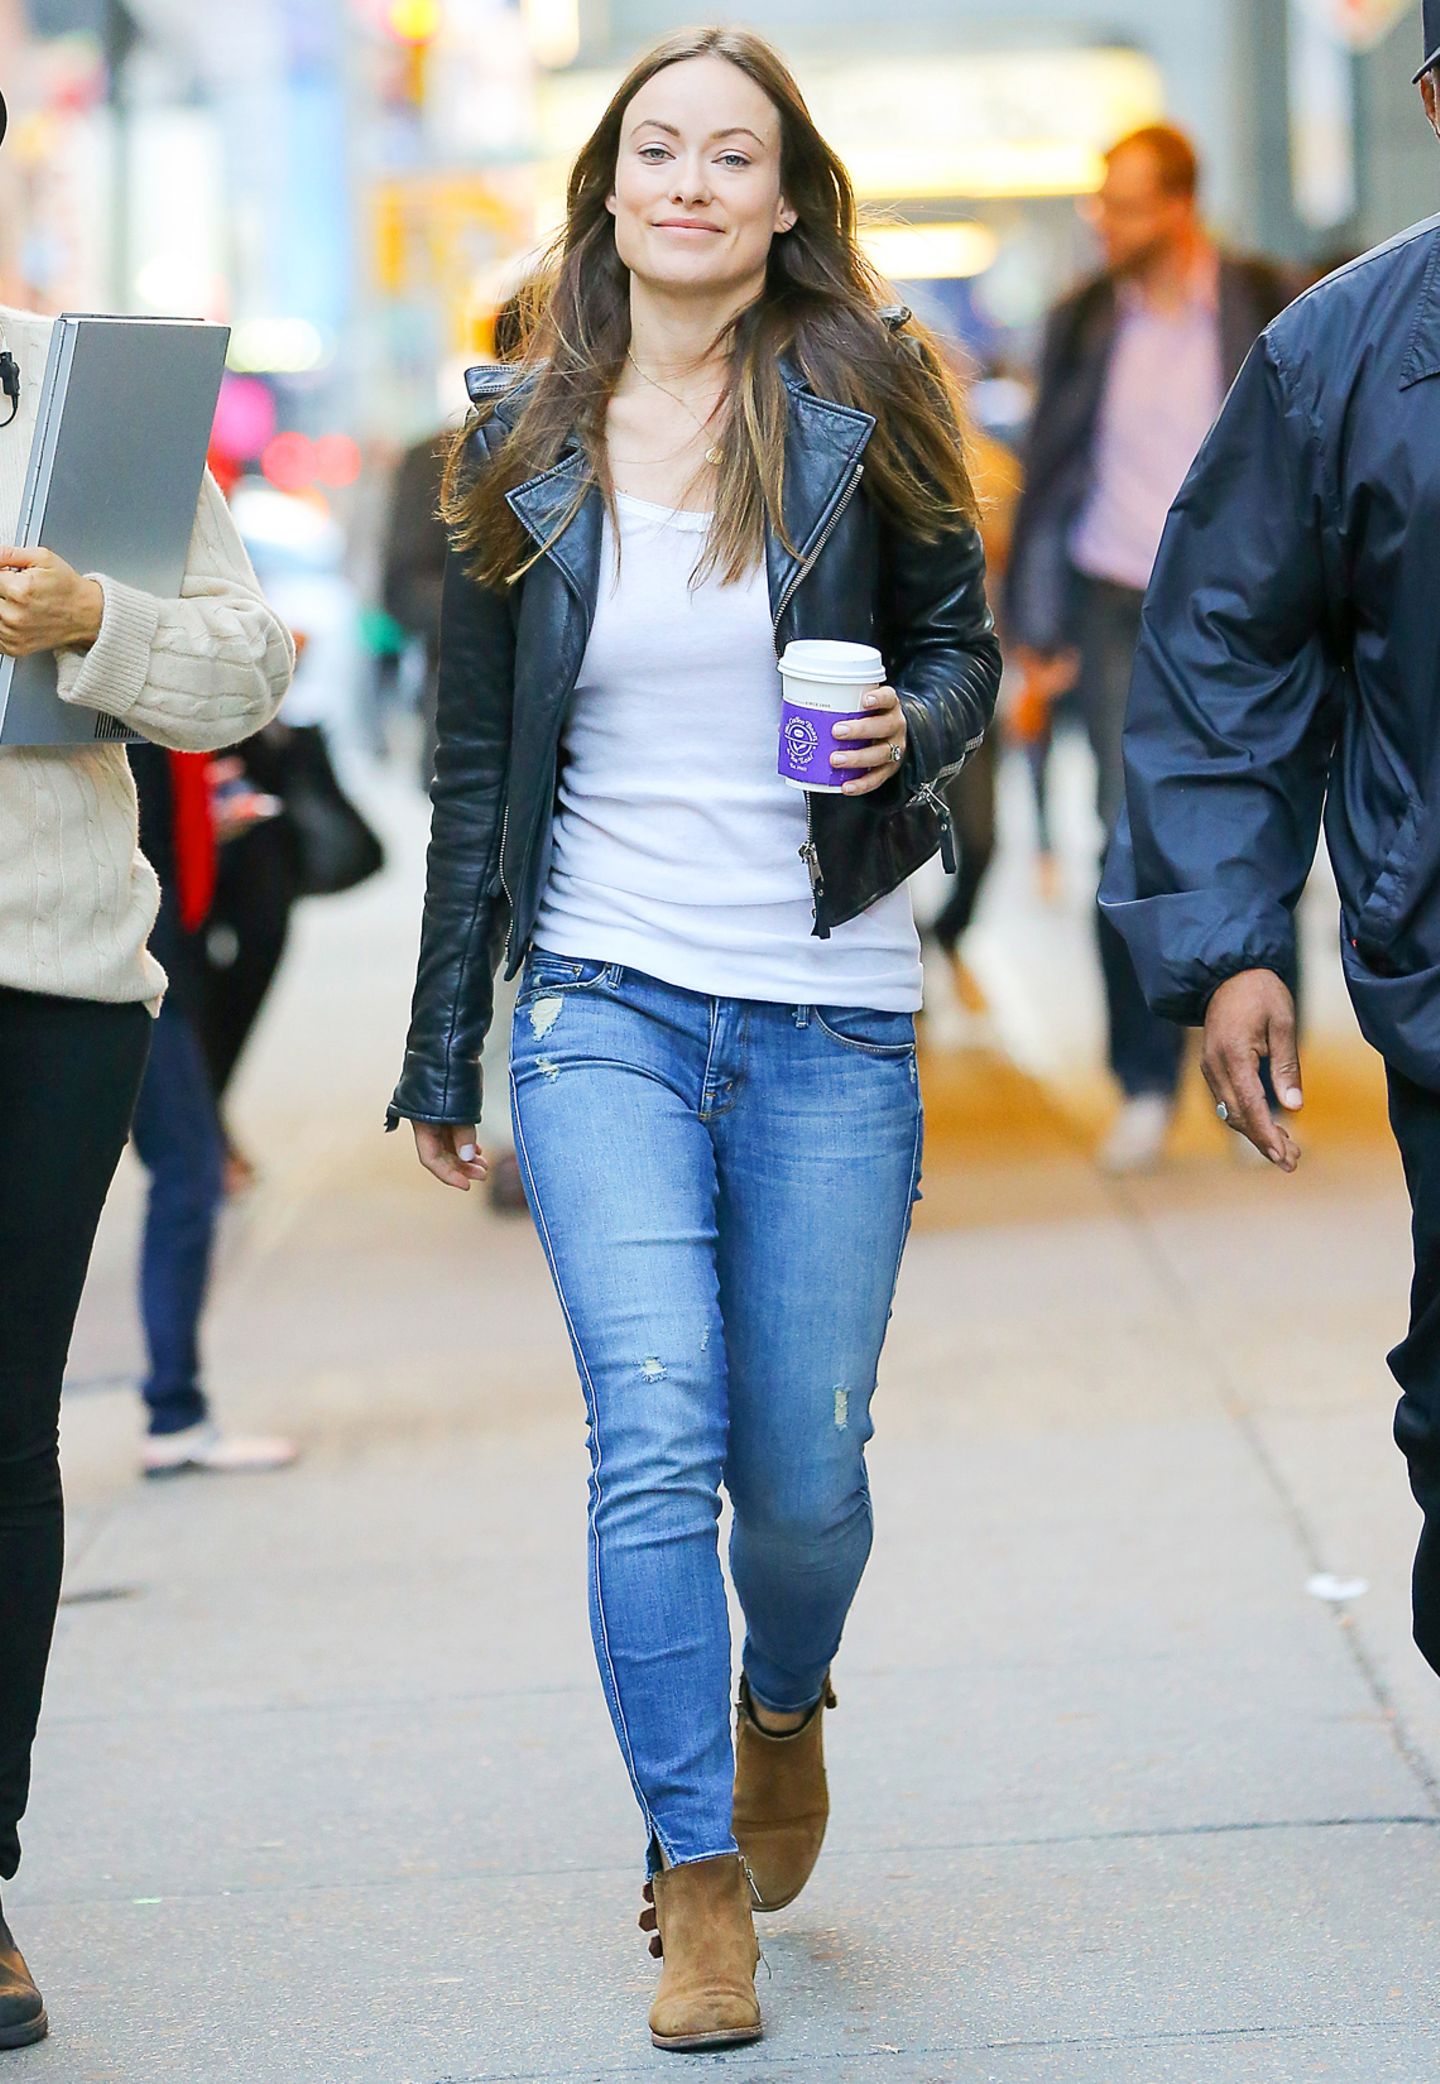 Olivia Wilde liebt den unkomplizierten Freizeit-Look. Zur Skinny Jeans trägt sie braune Booties, ein weißes Shirt und eine stylische Glattlederjacke.